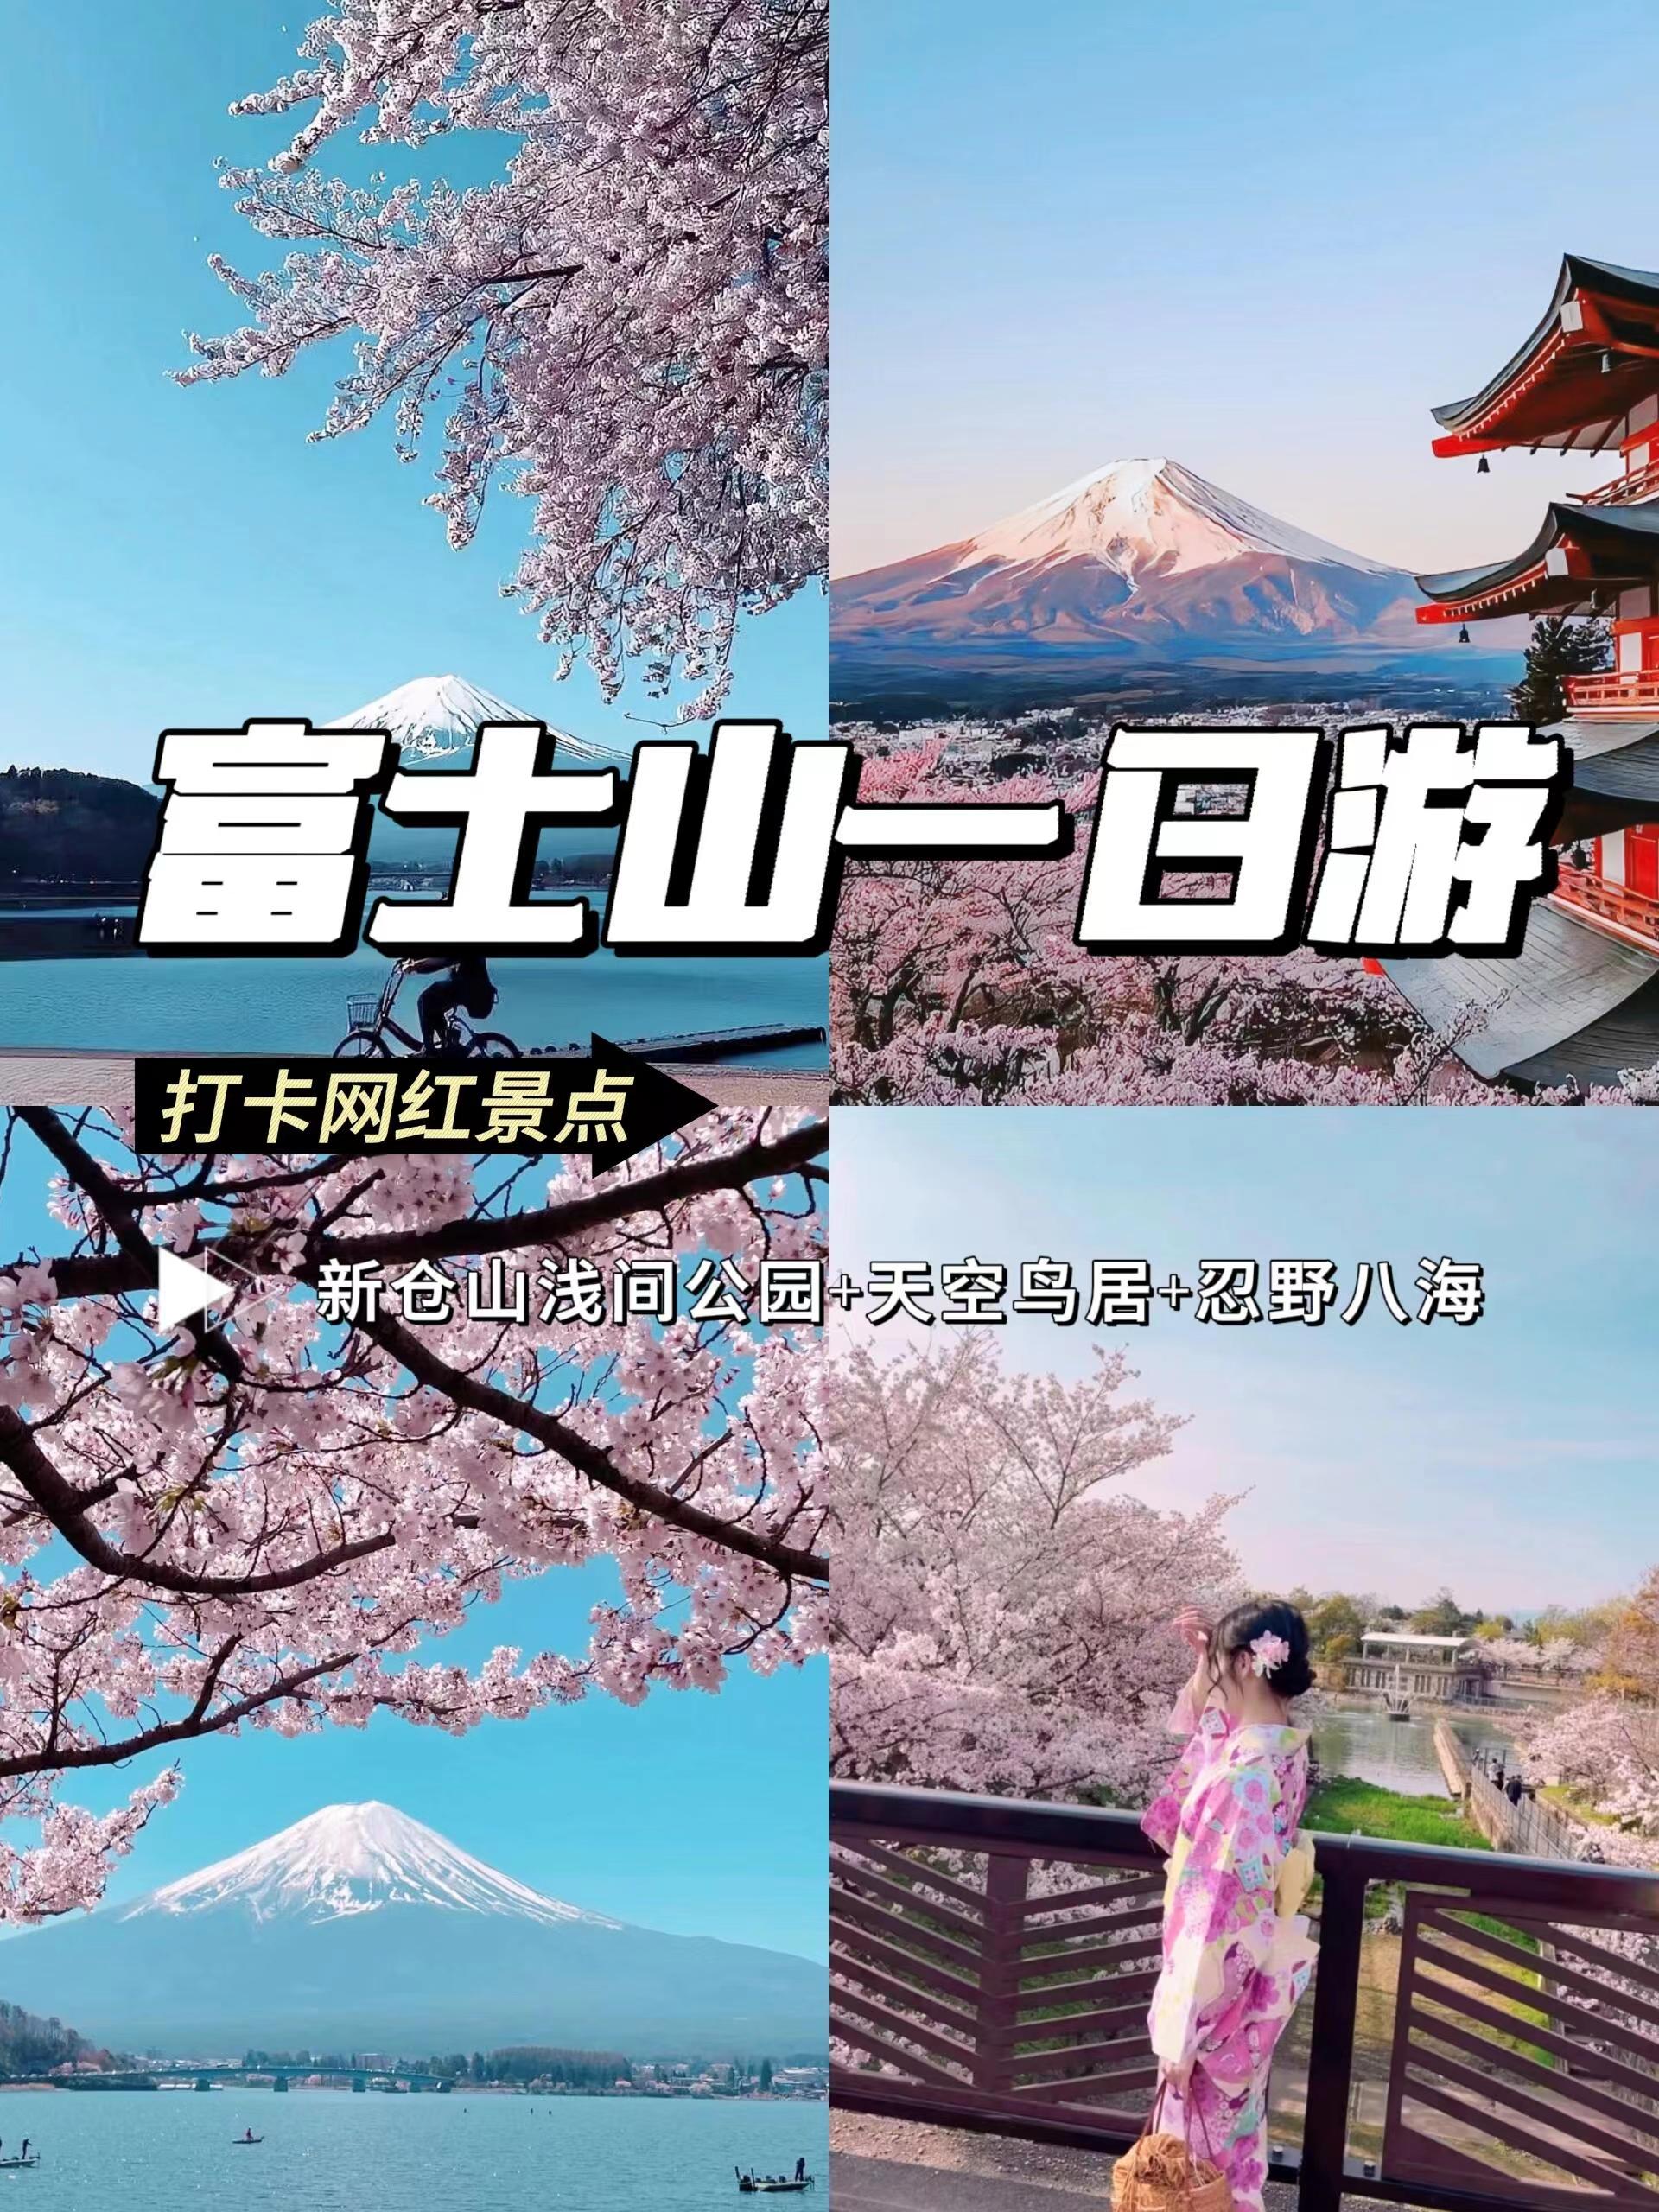 日本🇯🇵富士山一日游+打卡不同机位